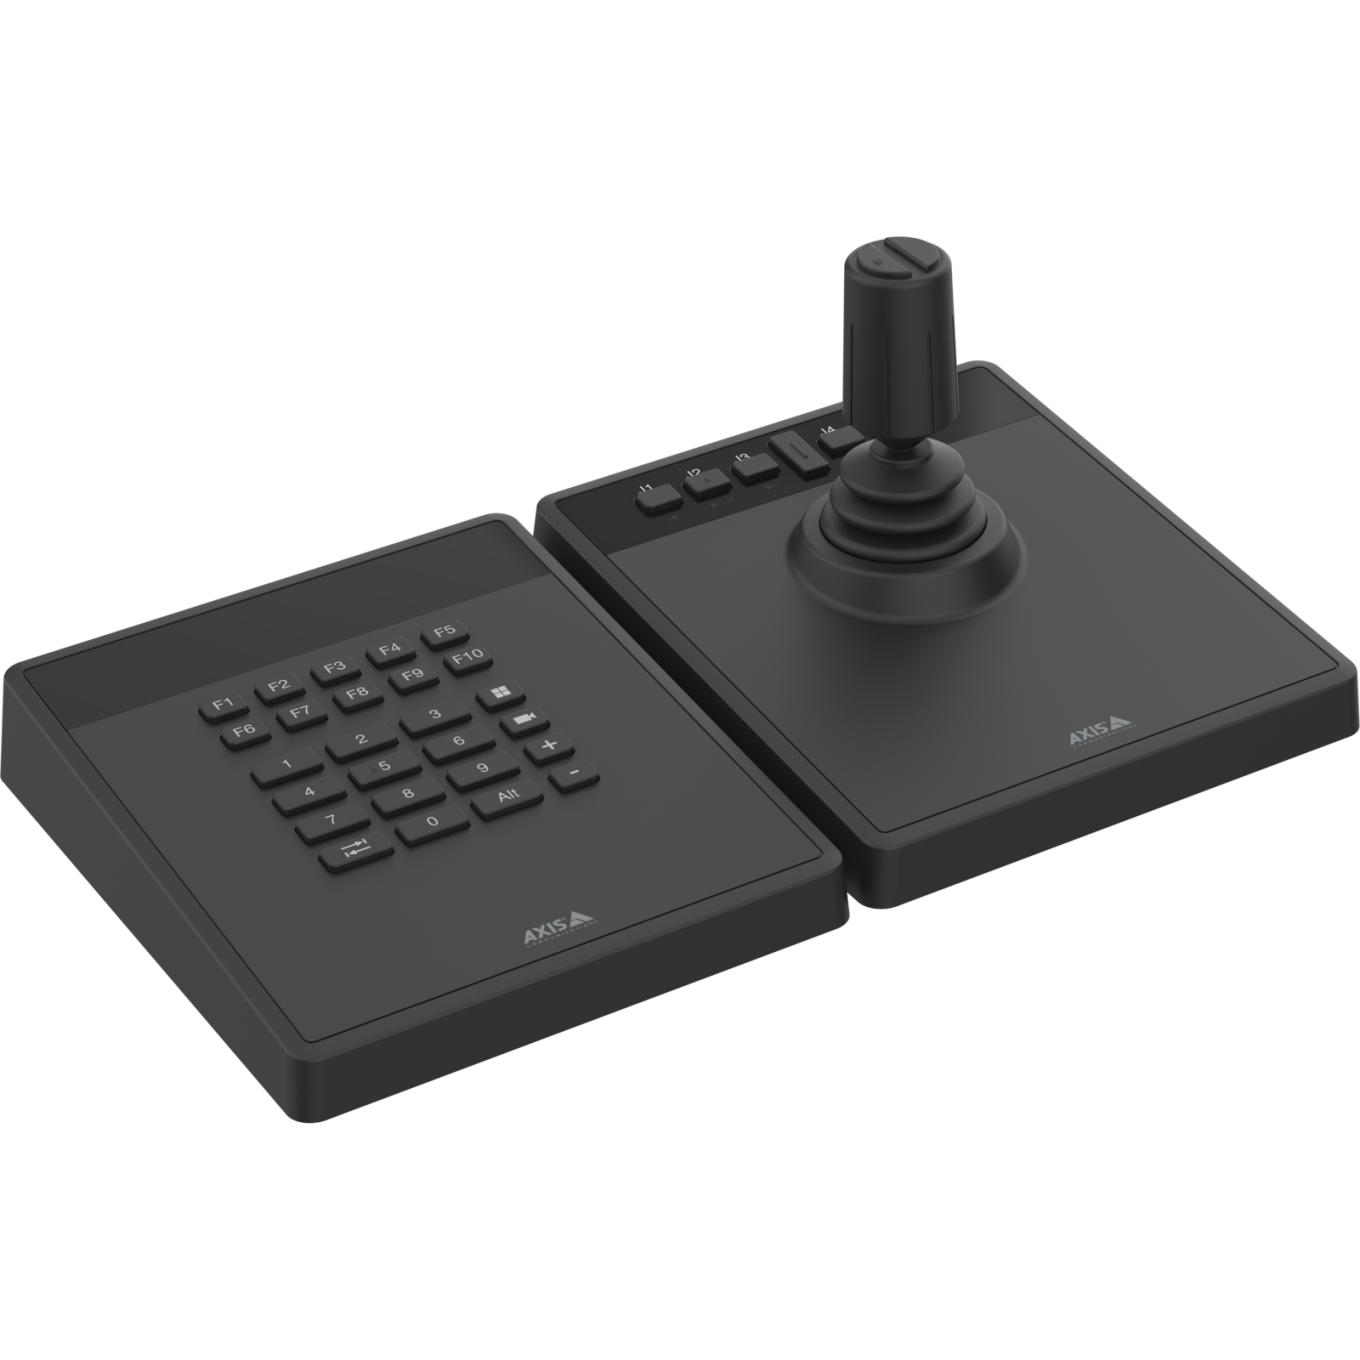 AXIS TU9001 Control Board para gestión profesional de cámaras y vídeos, teclado y joystick uno al lado del otro, sin texto en pantalla LCD